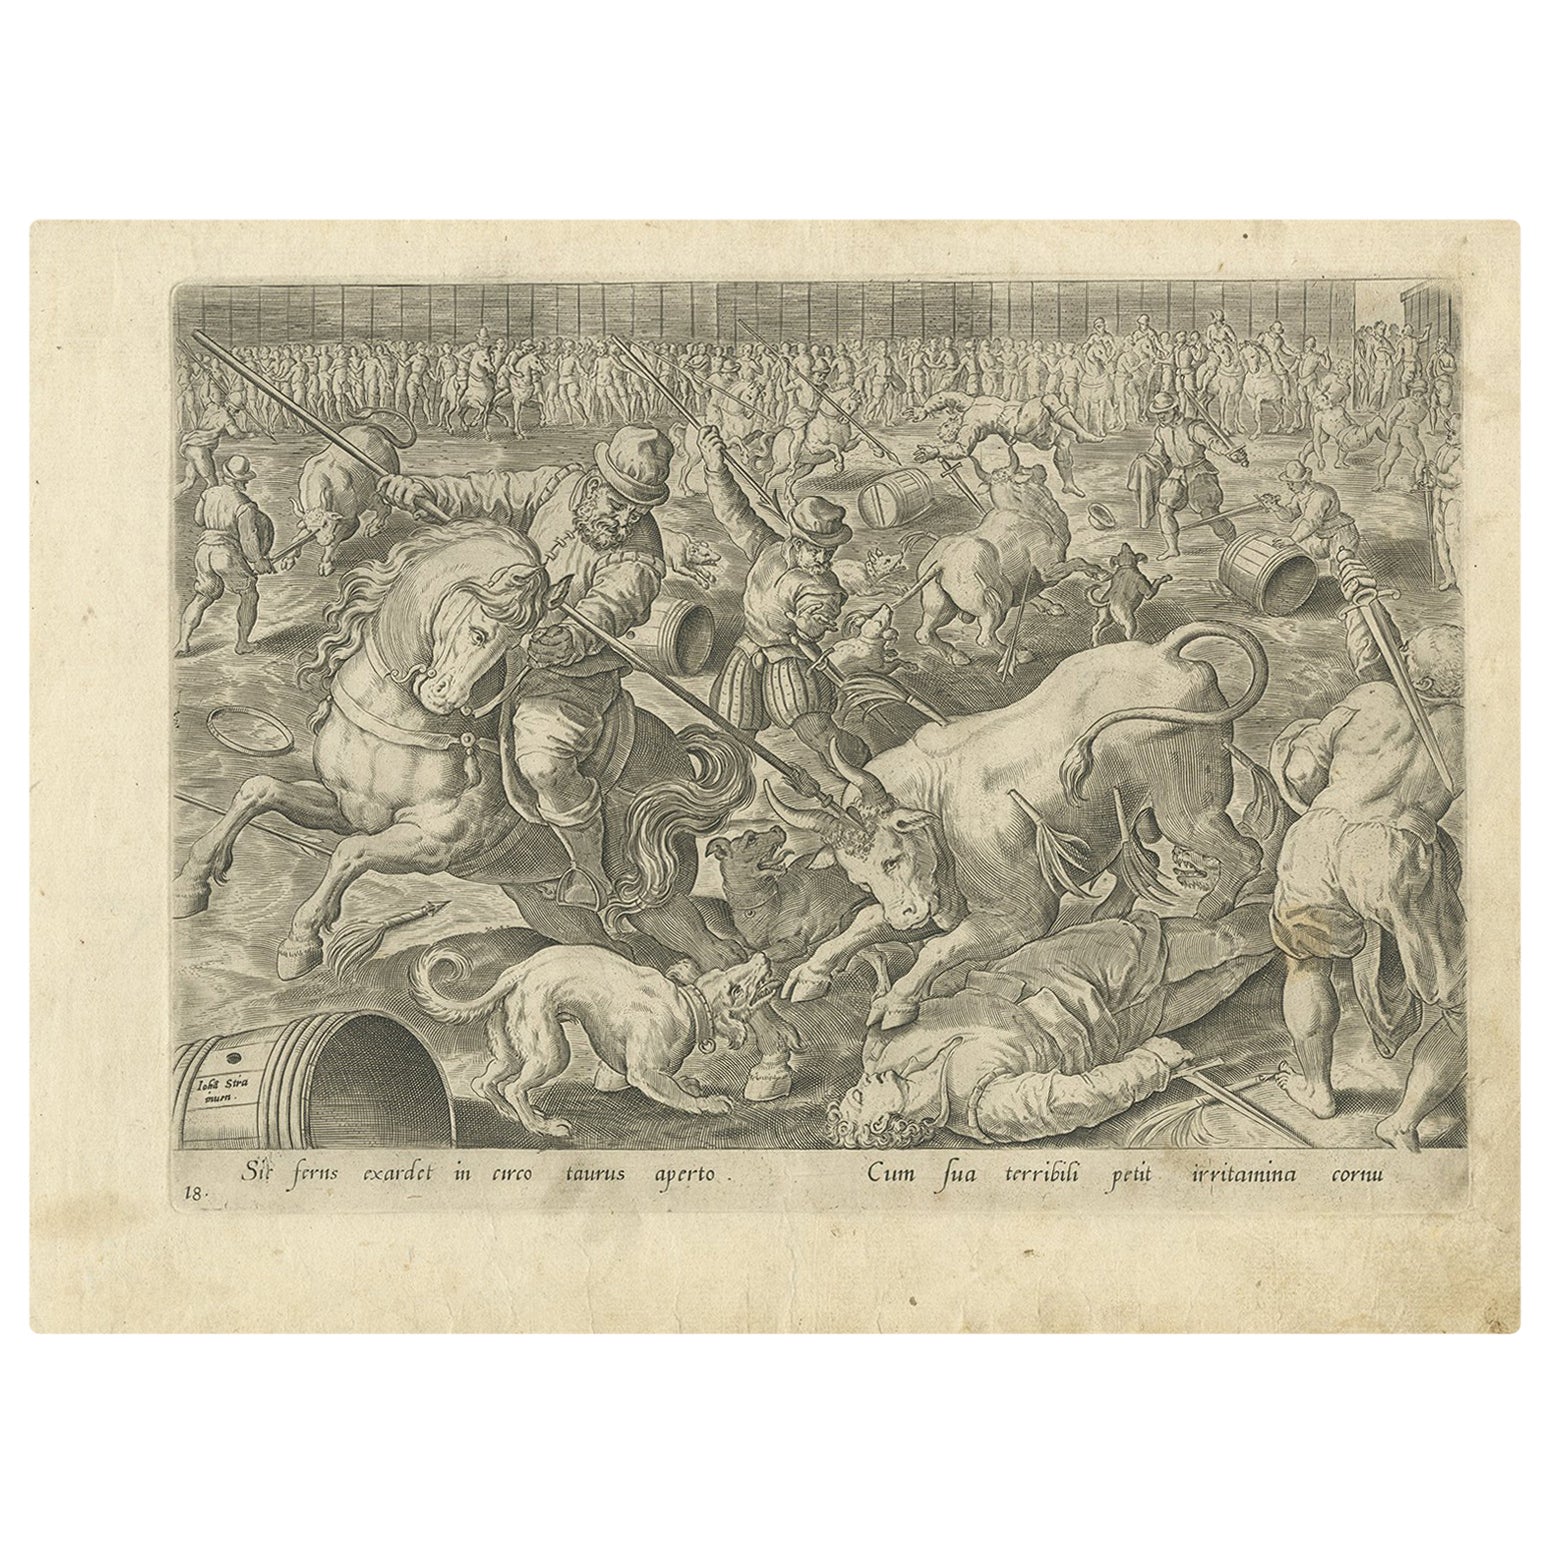 Antique print titled 'Sit ferns exardet in circo tarus aperto, Cum sua terribili petit irritamina cornu'. No. 18 by A. Stradanus depicting a bull fight in Spain. Published in 1576.